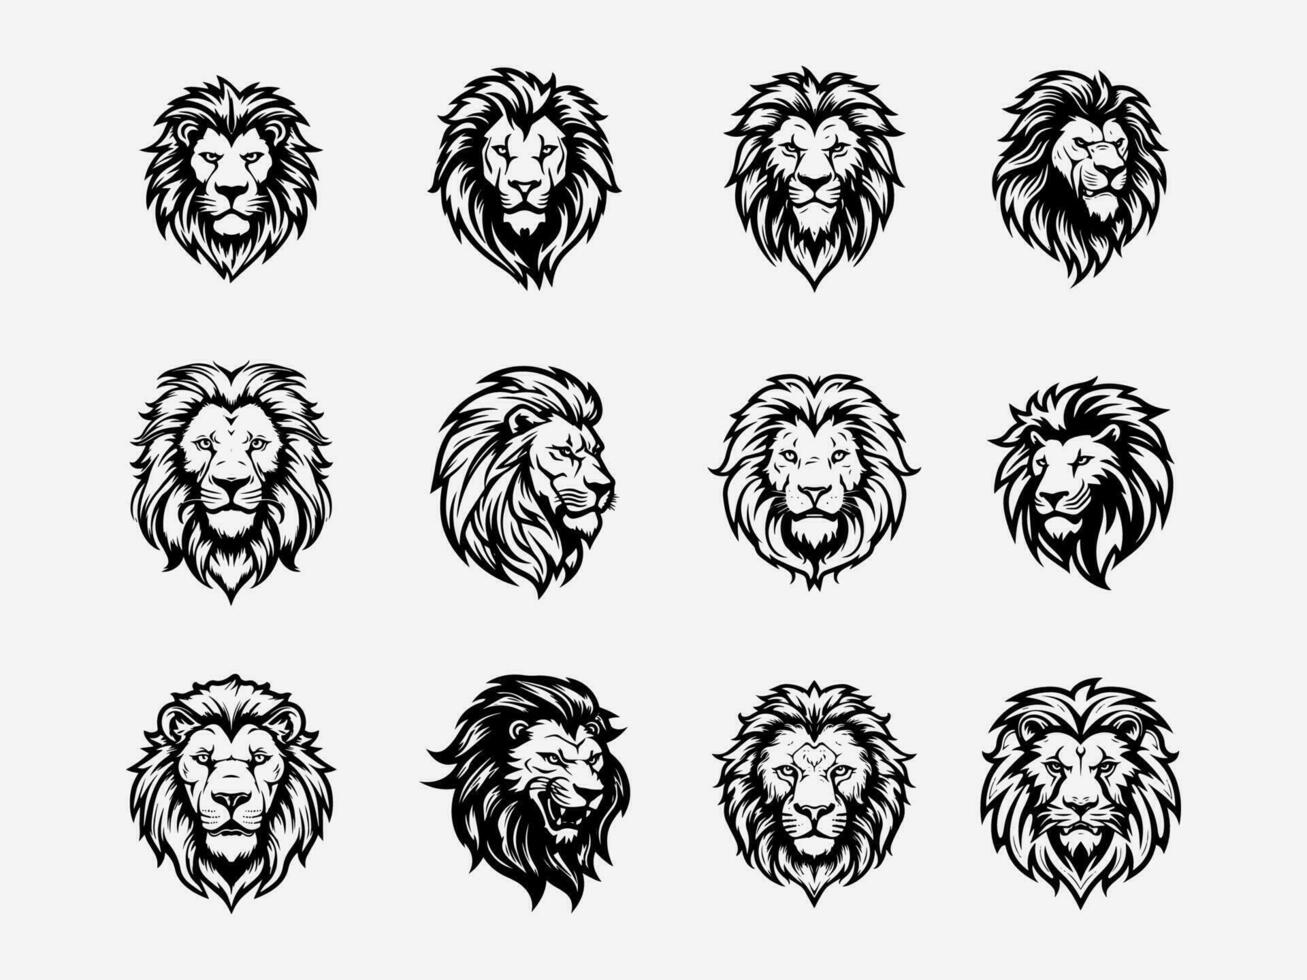 boeiend hand- getrokken leeuw logo ontwerp illustratie, vertegenwoordigen moed, majesteit, en de geest van de wild vector